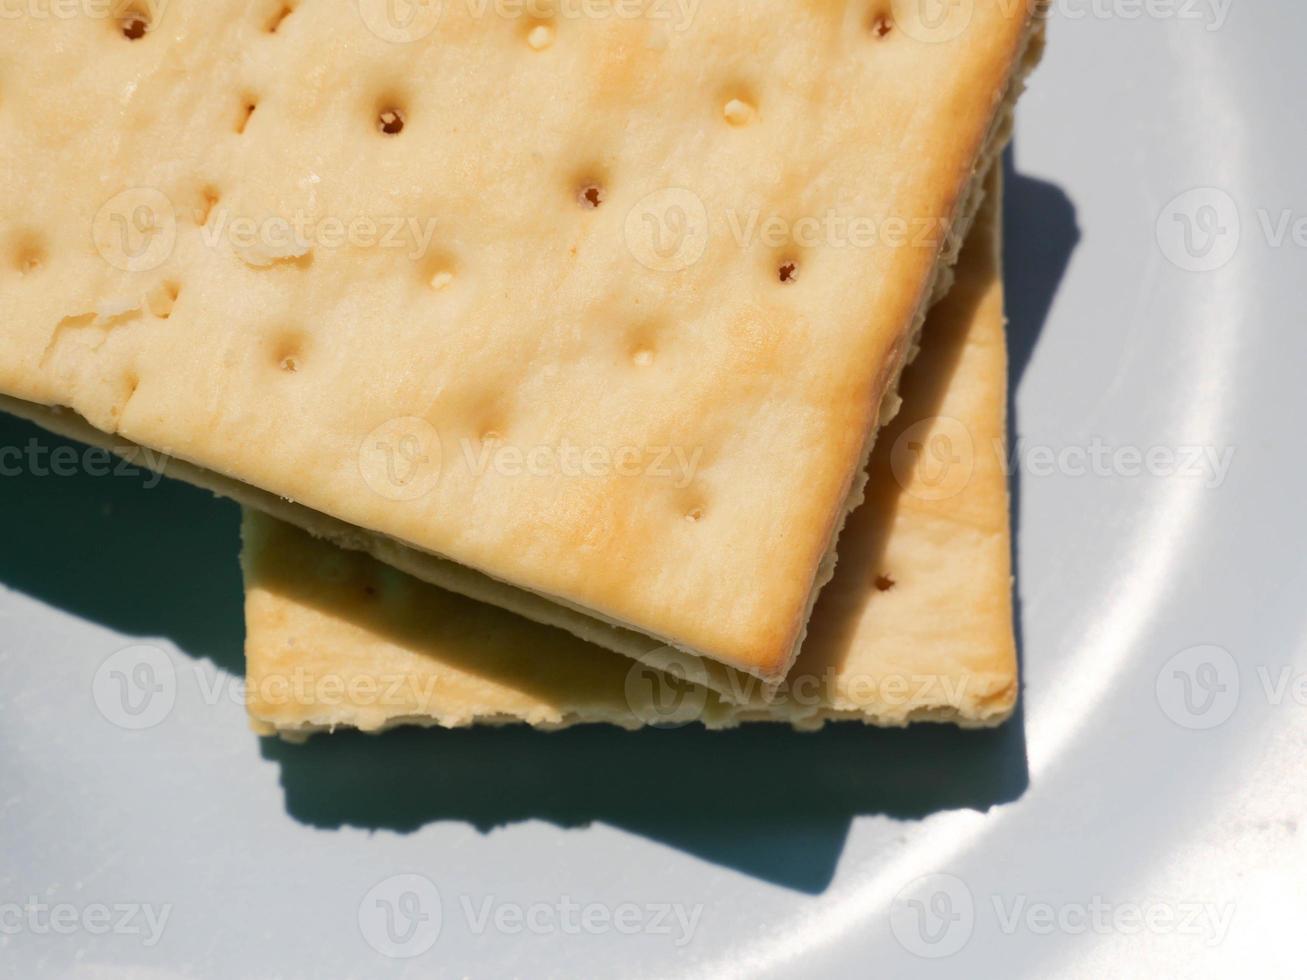 detailopname van crackers gestapeld Aan een bord foto